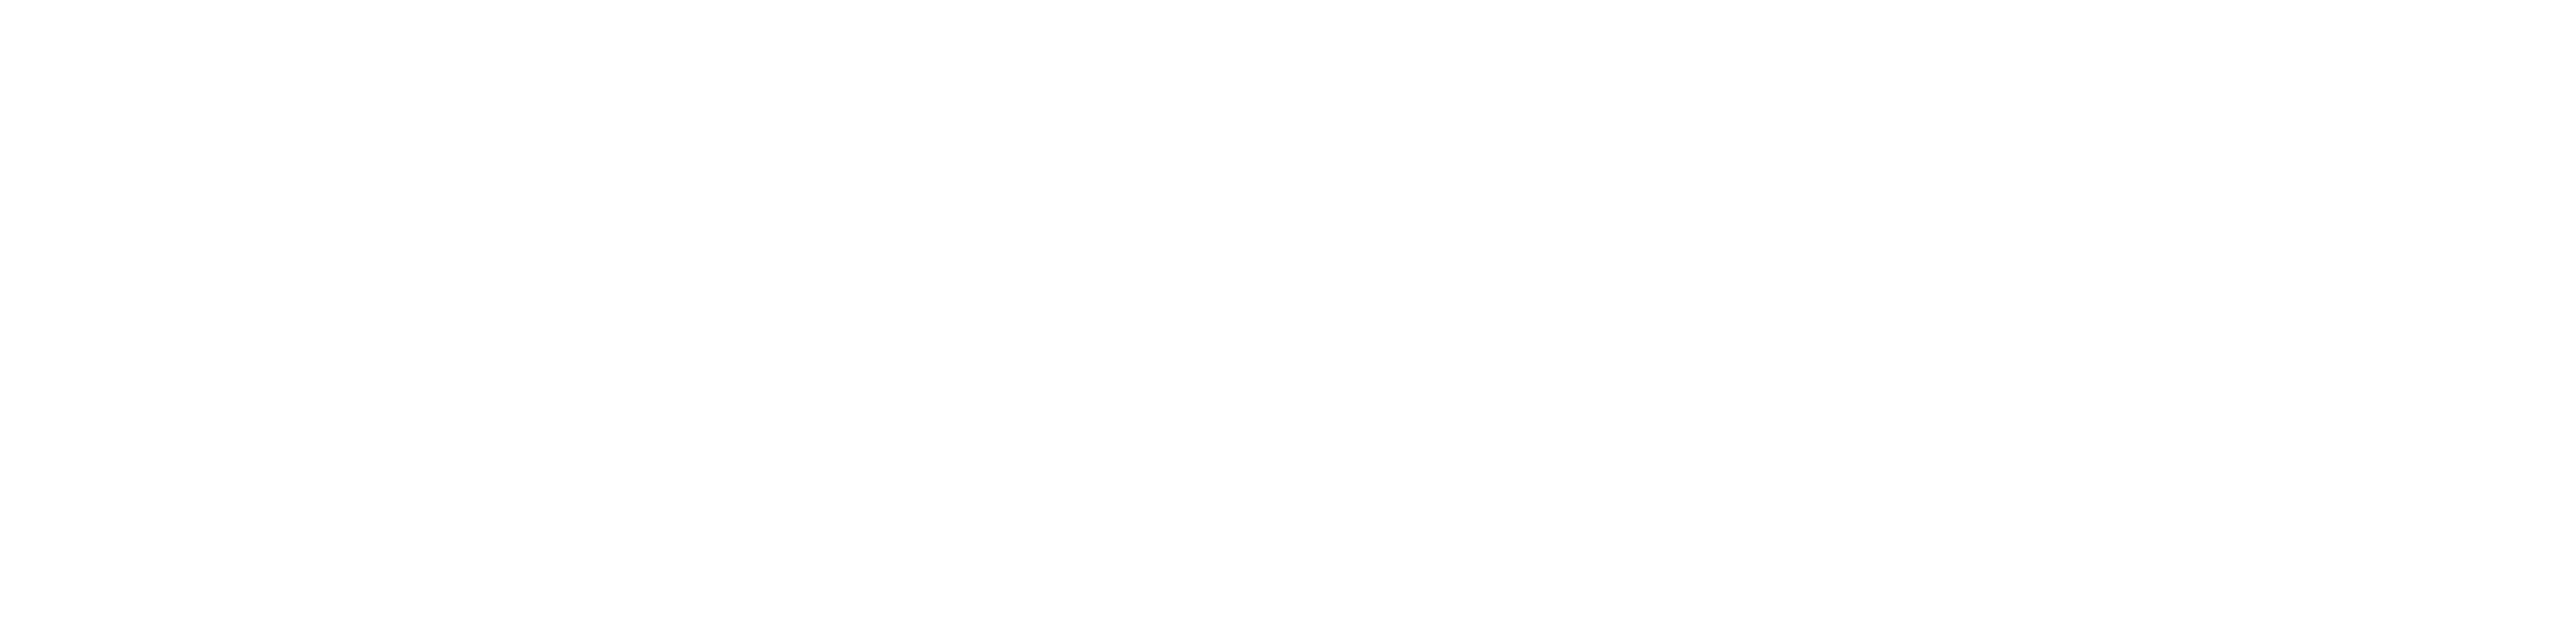 National Timber Group Logo